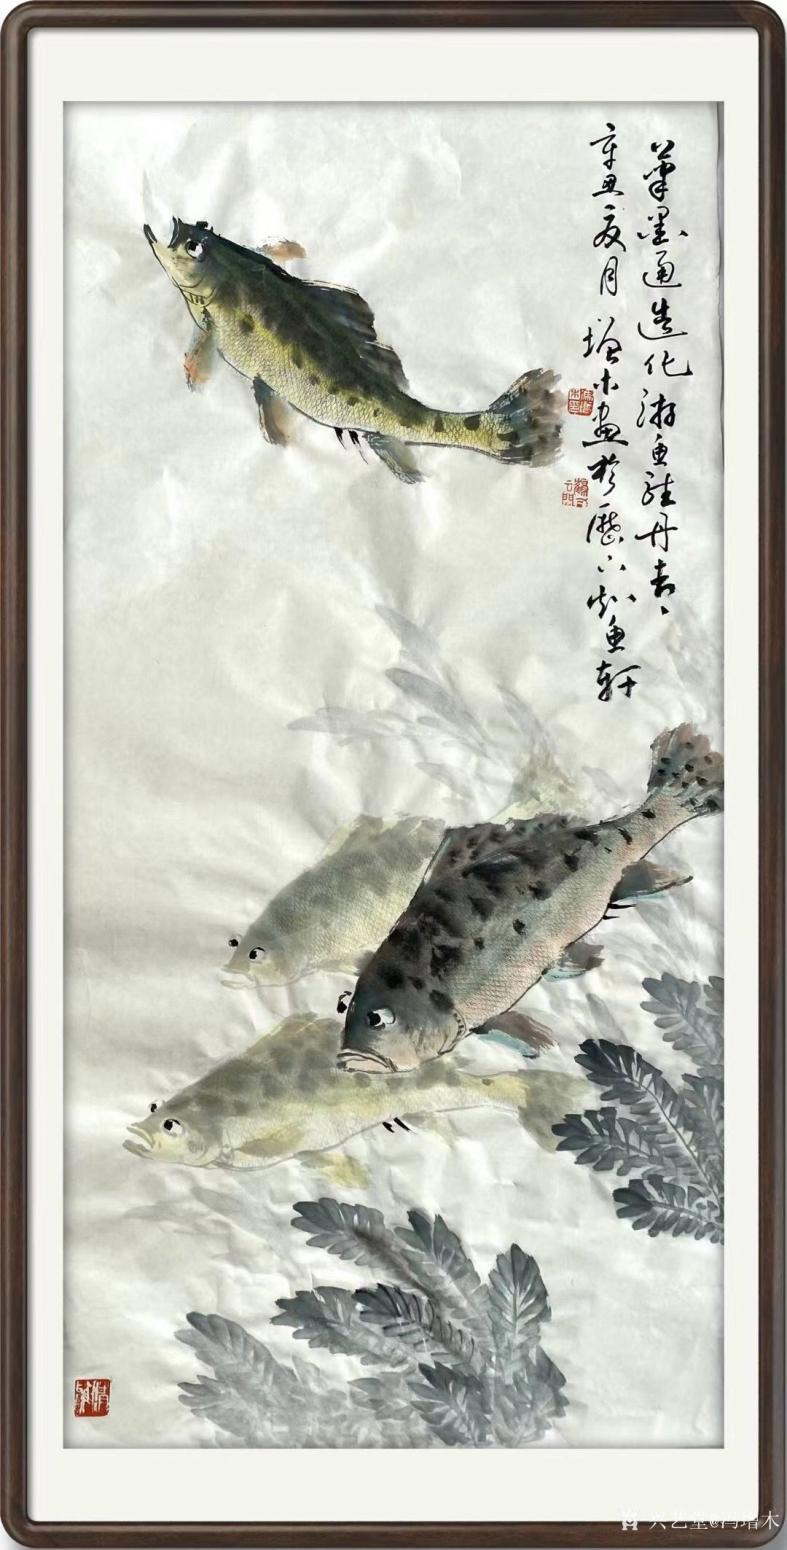 冯增木国画作品《鱼-笔墨通造化》